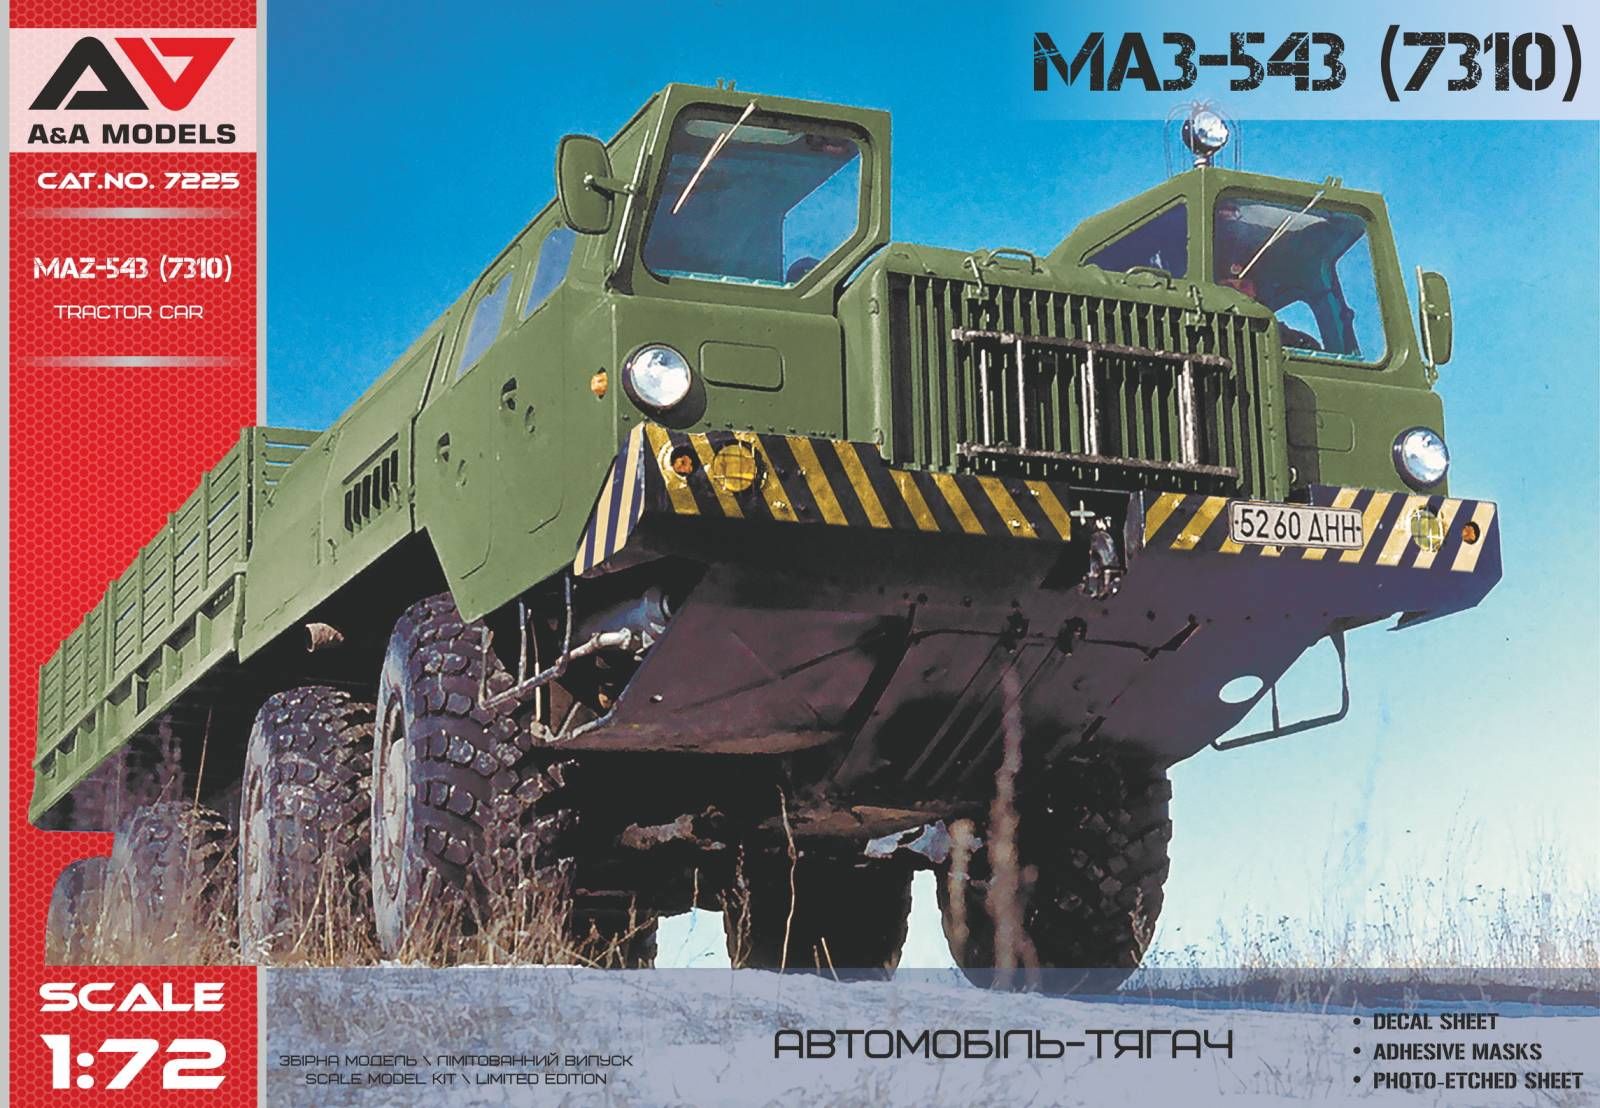 A&A Models 1/72 MAZ-543 Heavy artillery truck - Click Image to Close